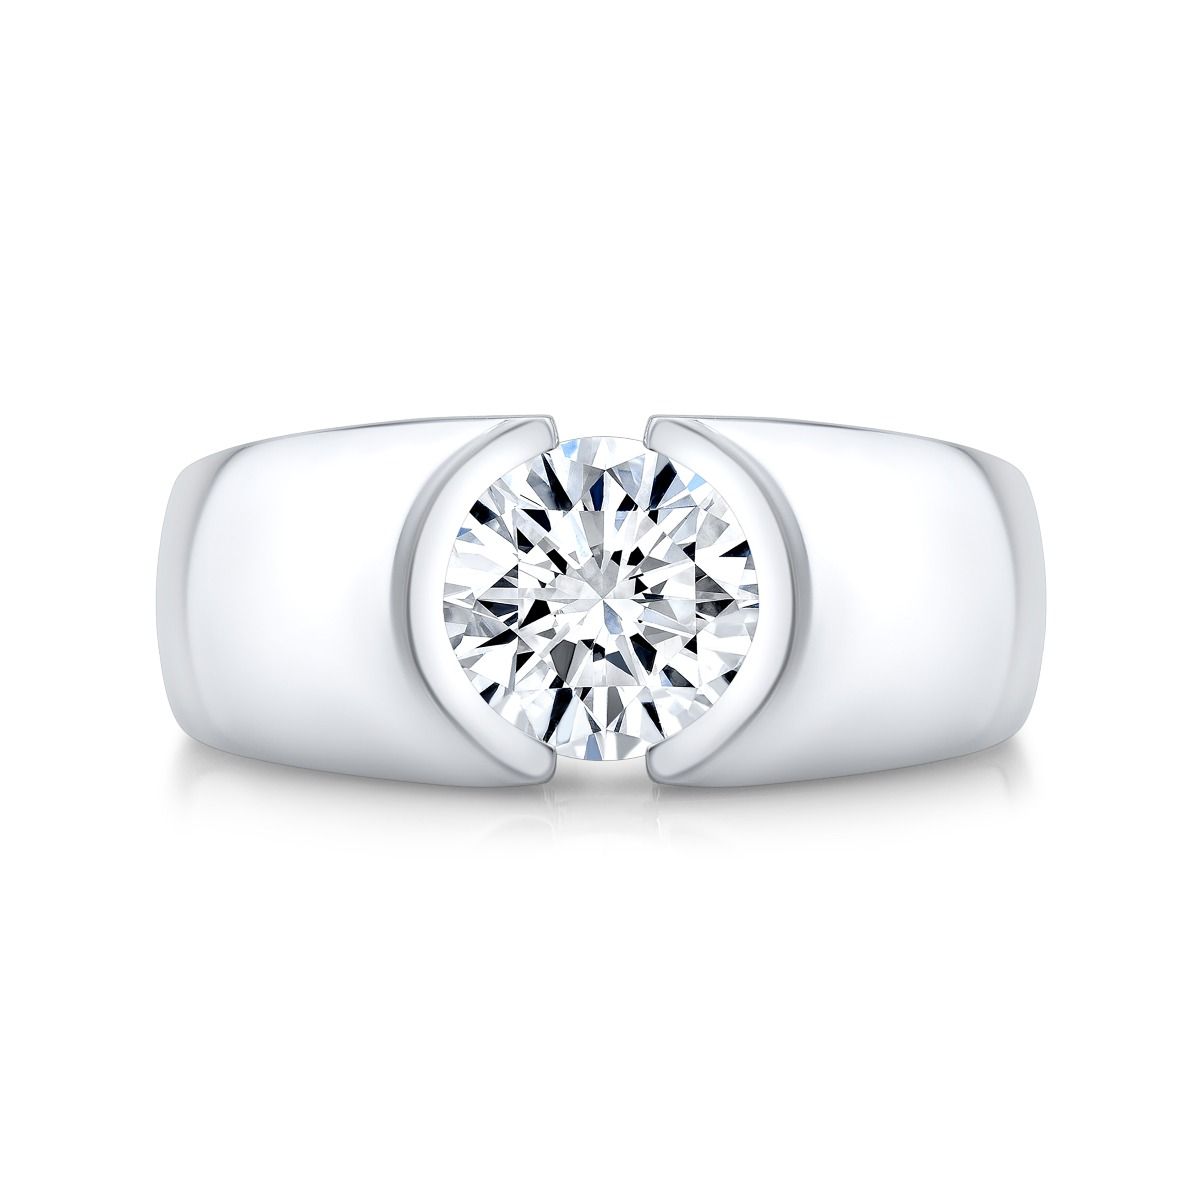 10 Elegant-1-carat Diamond Engagemen Rings